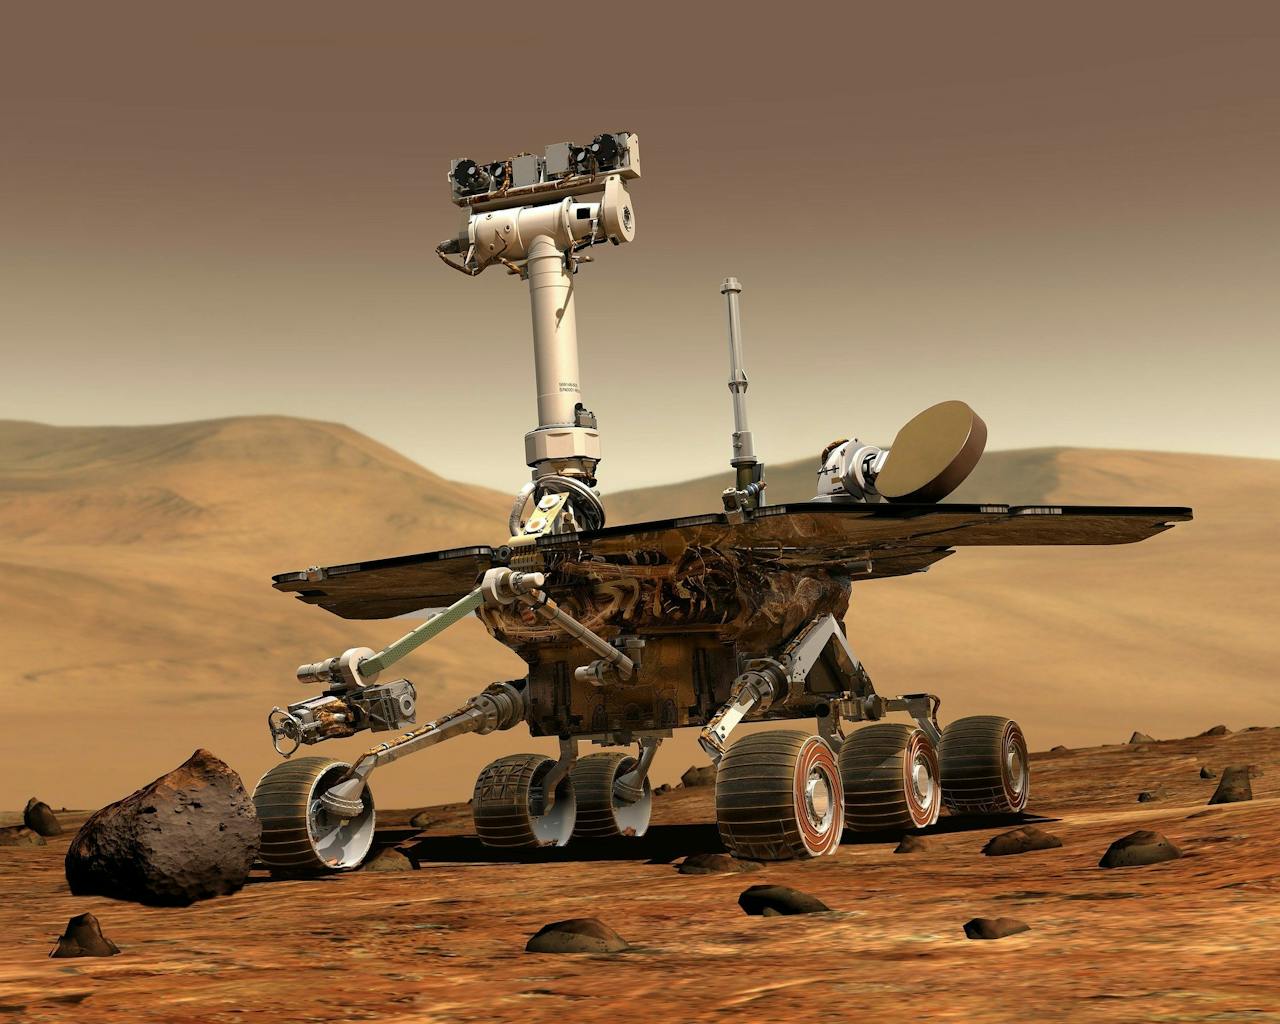 Foto van een Marsrover die zich op het roodbruine, rotsachtige landschap van Mars bevindt en een steen onderzoekt met zijn instrumentenarm